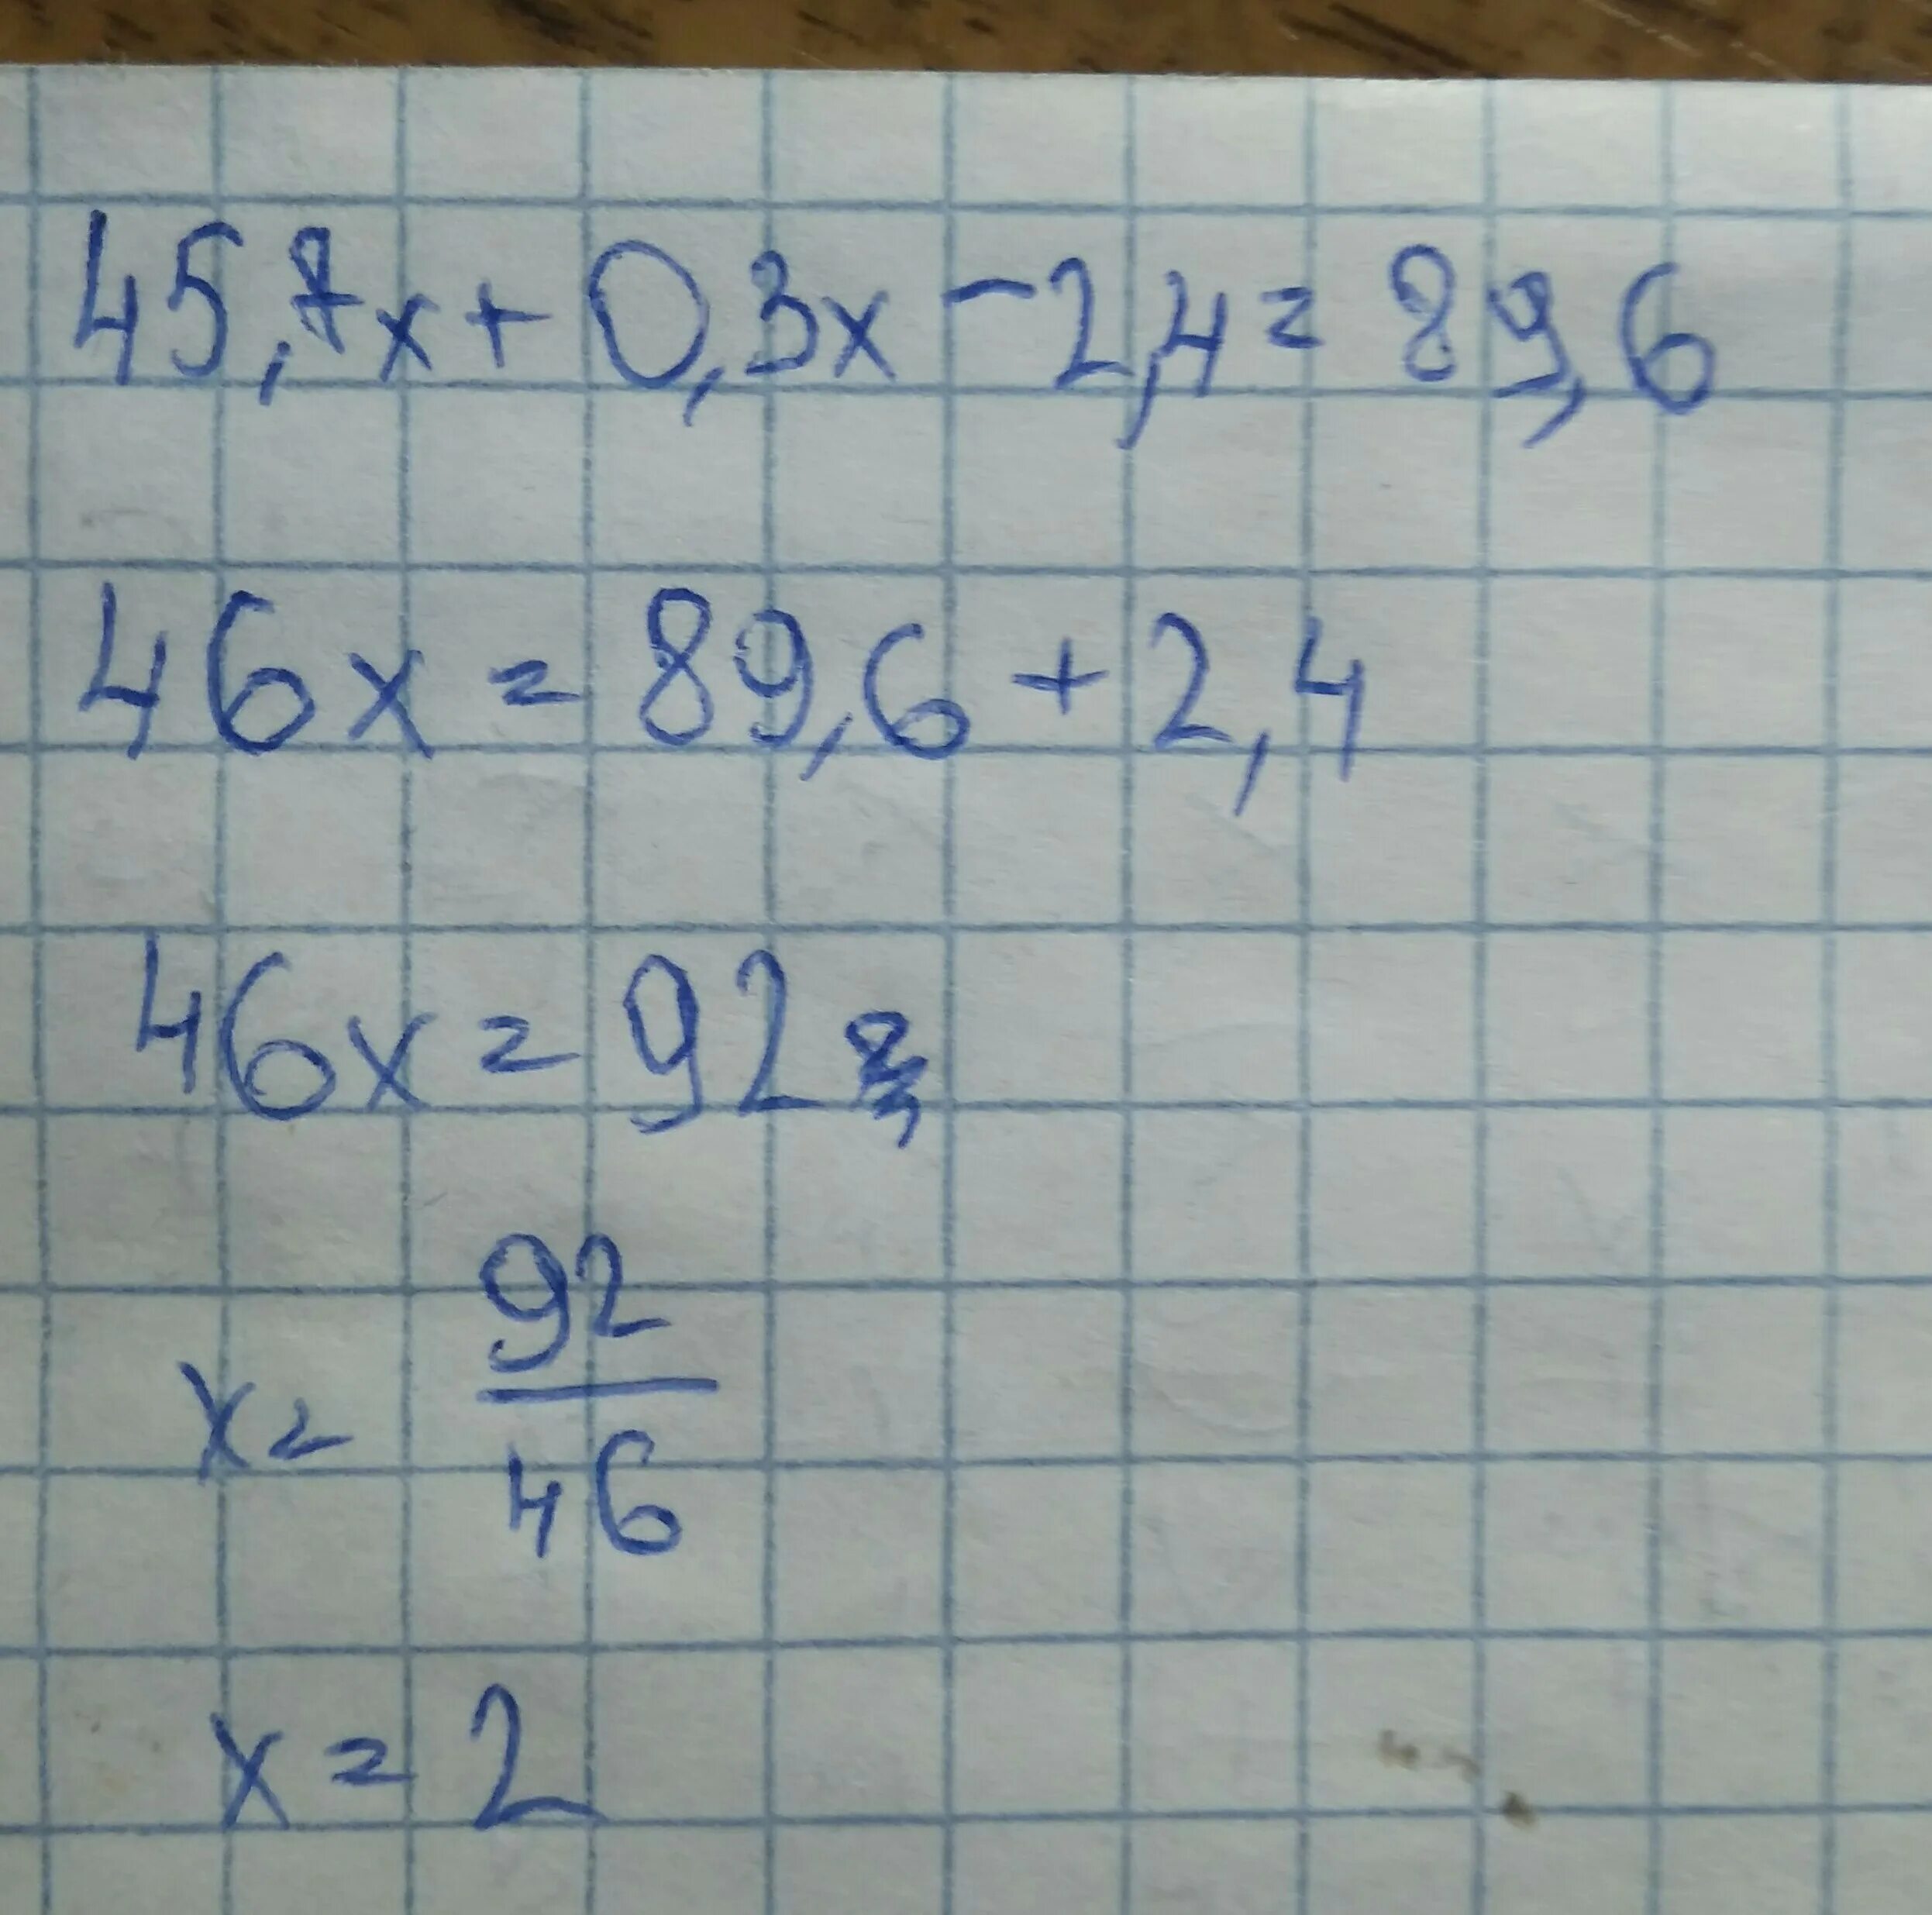 45.7Х+0.3Х-2.4 89.6 решение. Решите уравнение 45.7х+0.3х-2.4 89.6. 45 7х+0.3-2.4 89.6. 45 7х 0 3х-2 4 89 6. 3 x 7 75